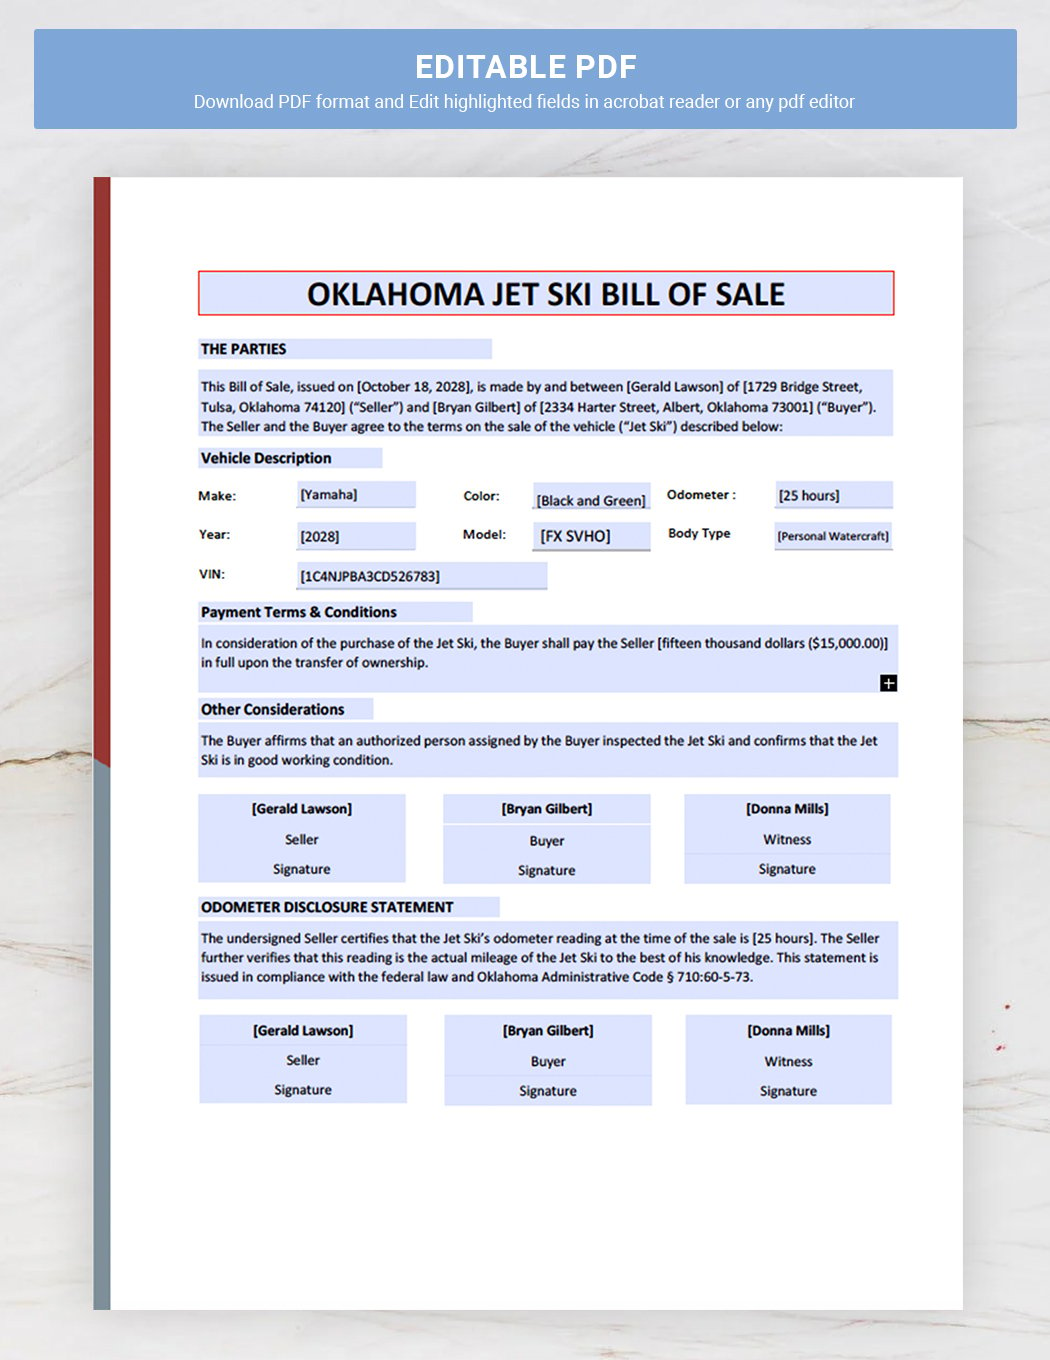 Oklahoma Jet Ski Bill of Sale Template